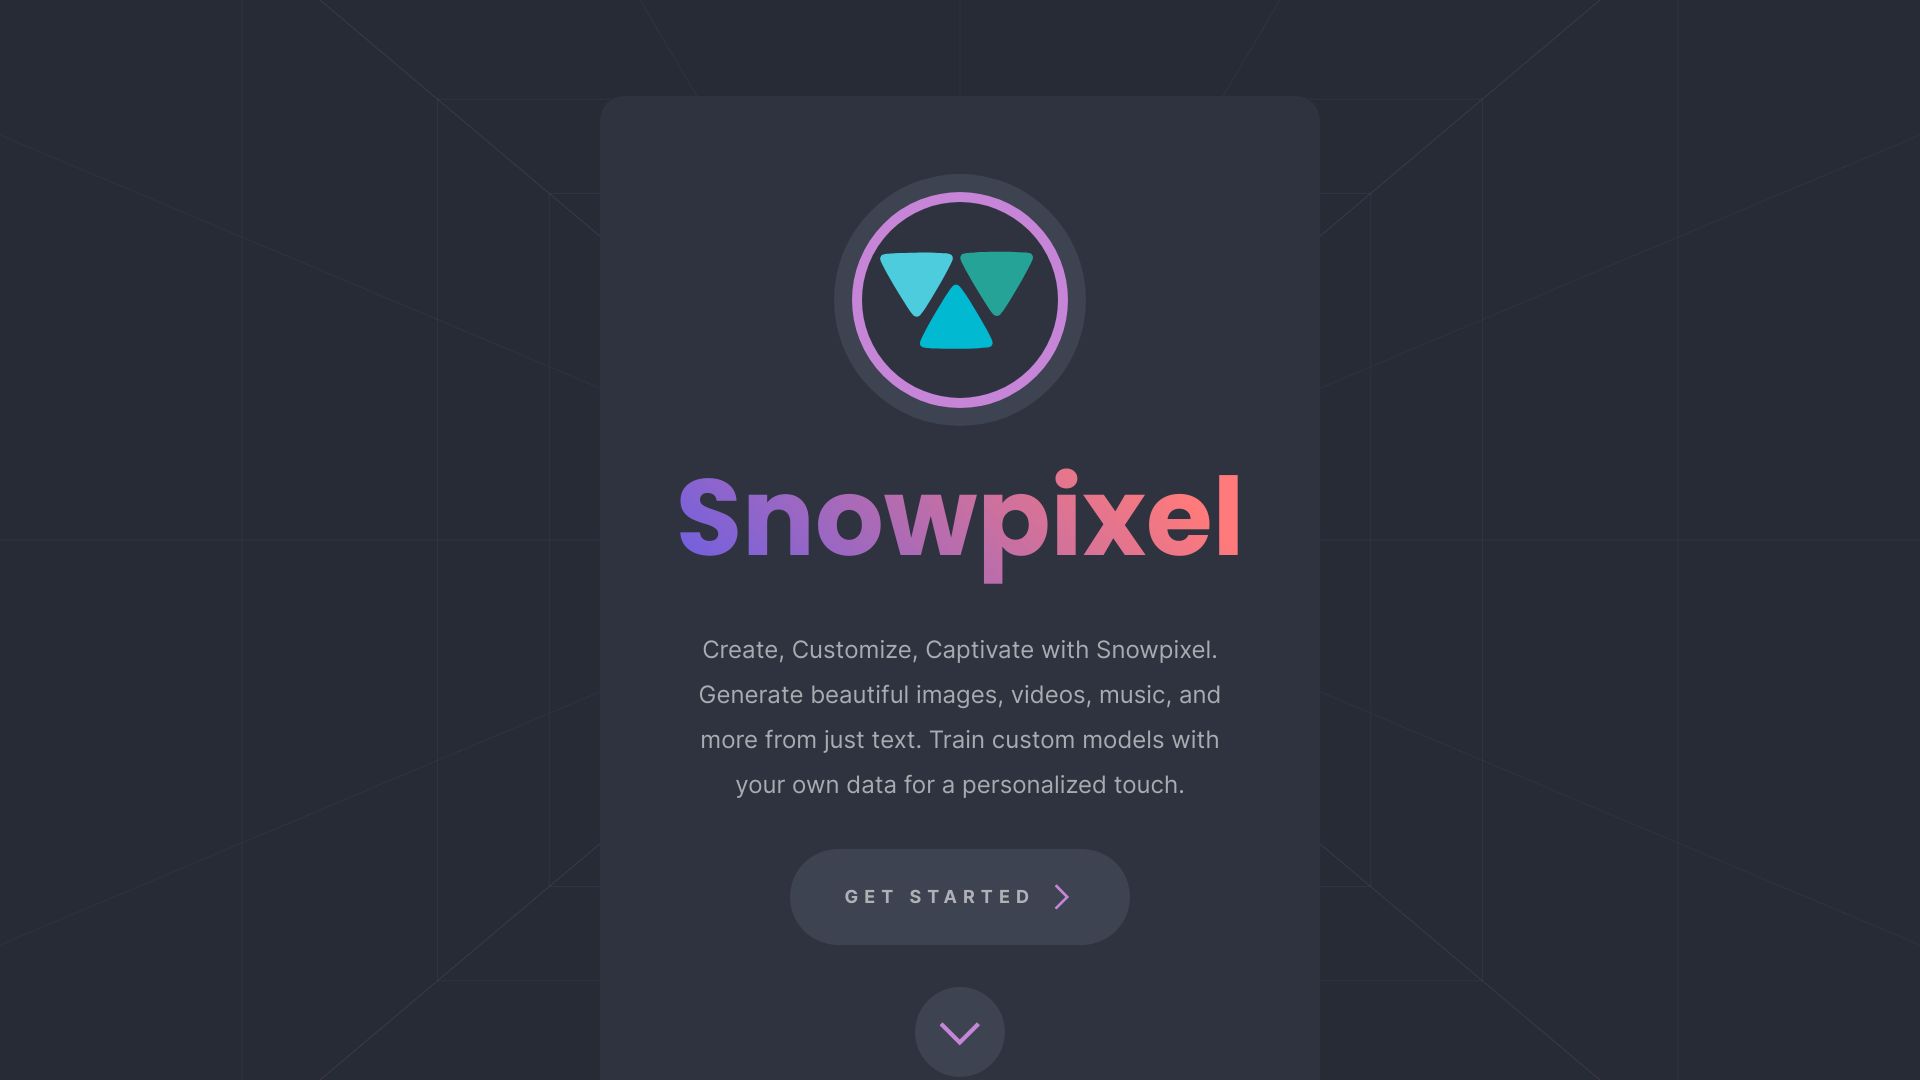 Snowpixel App